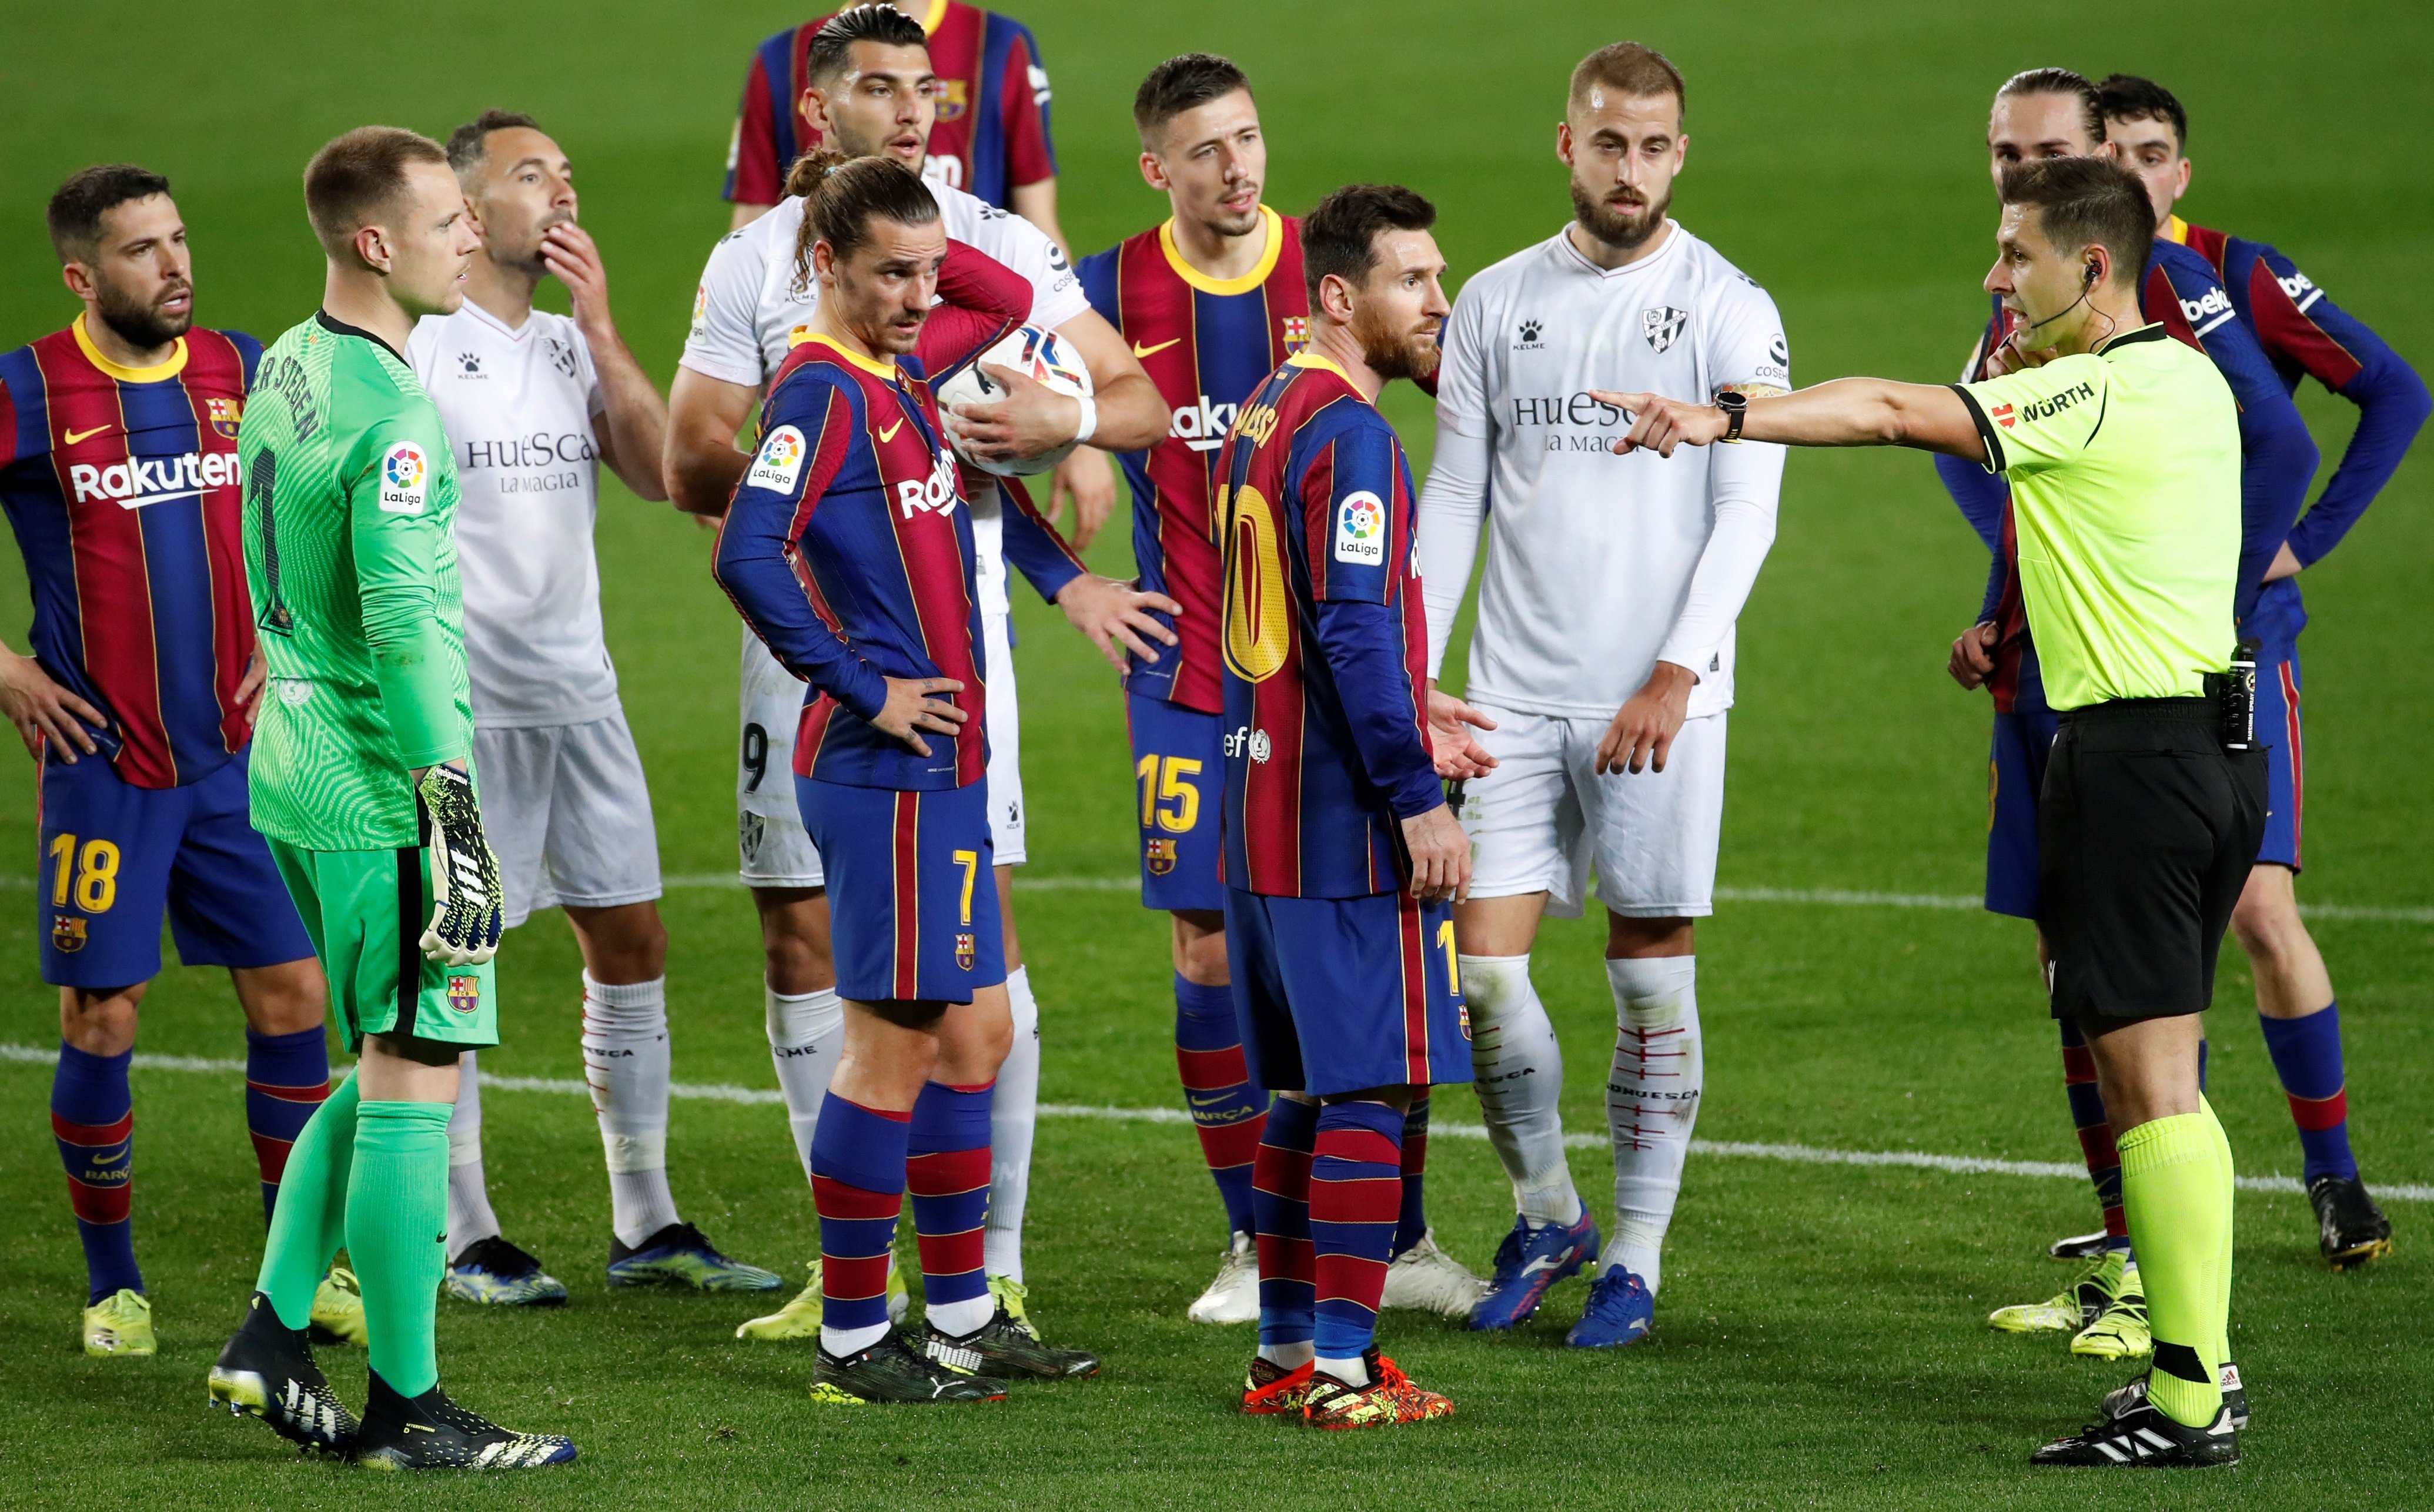 El Barça-Huesca y uno de los penaltis más vergonzosos que se recuerdan